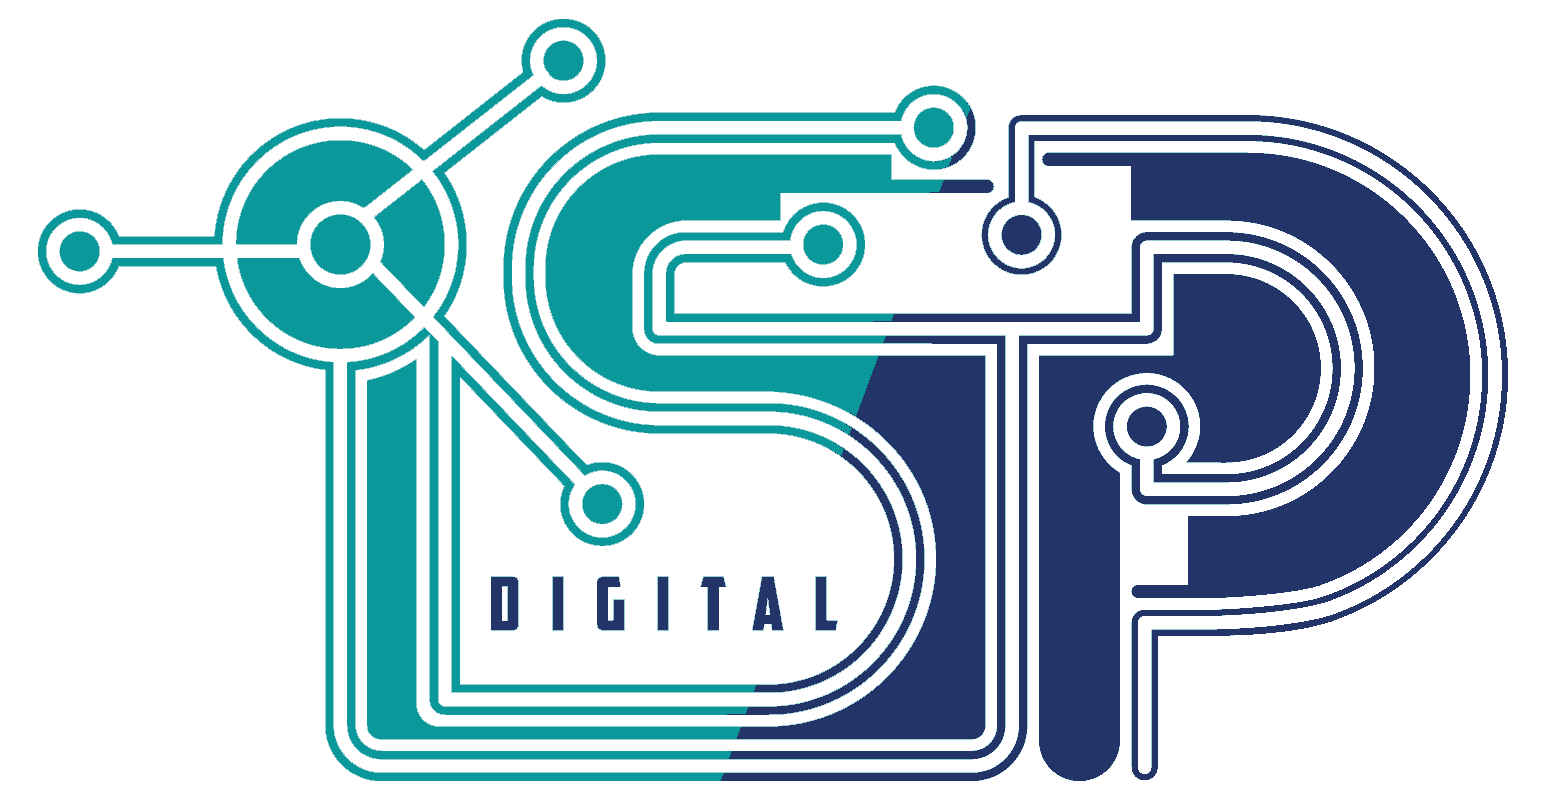 Smart Net-logo